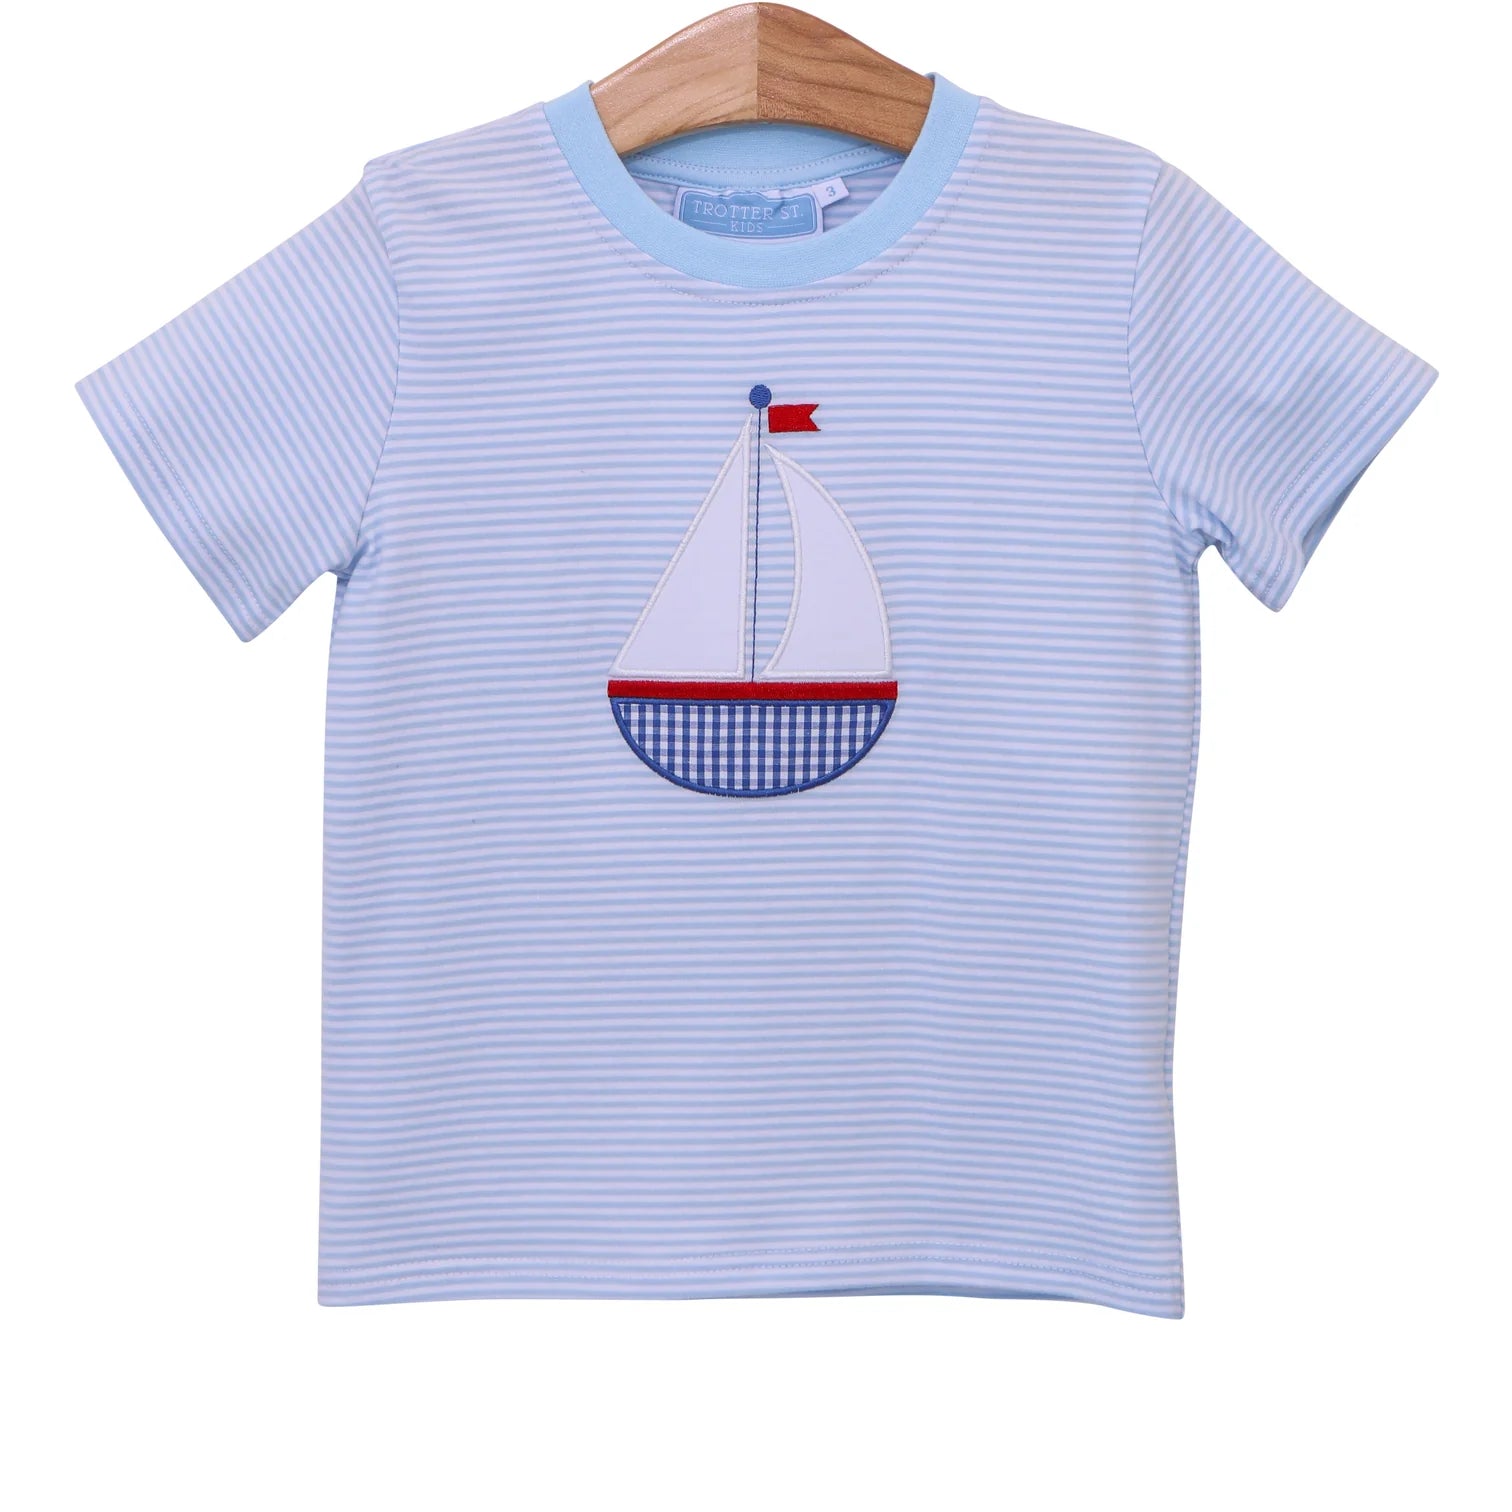 Sailboat Shirt